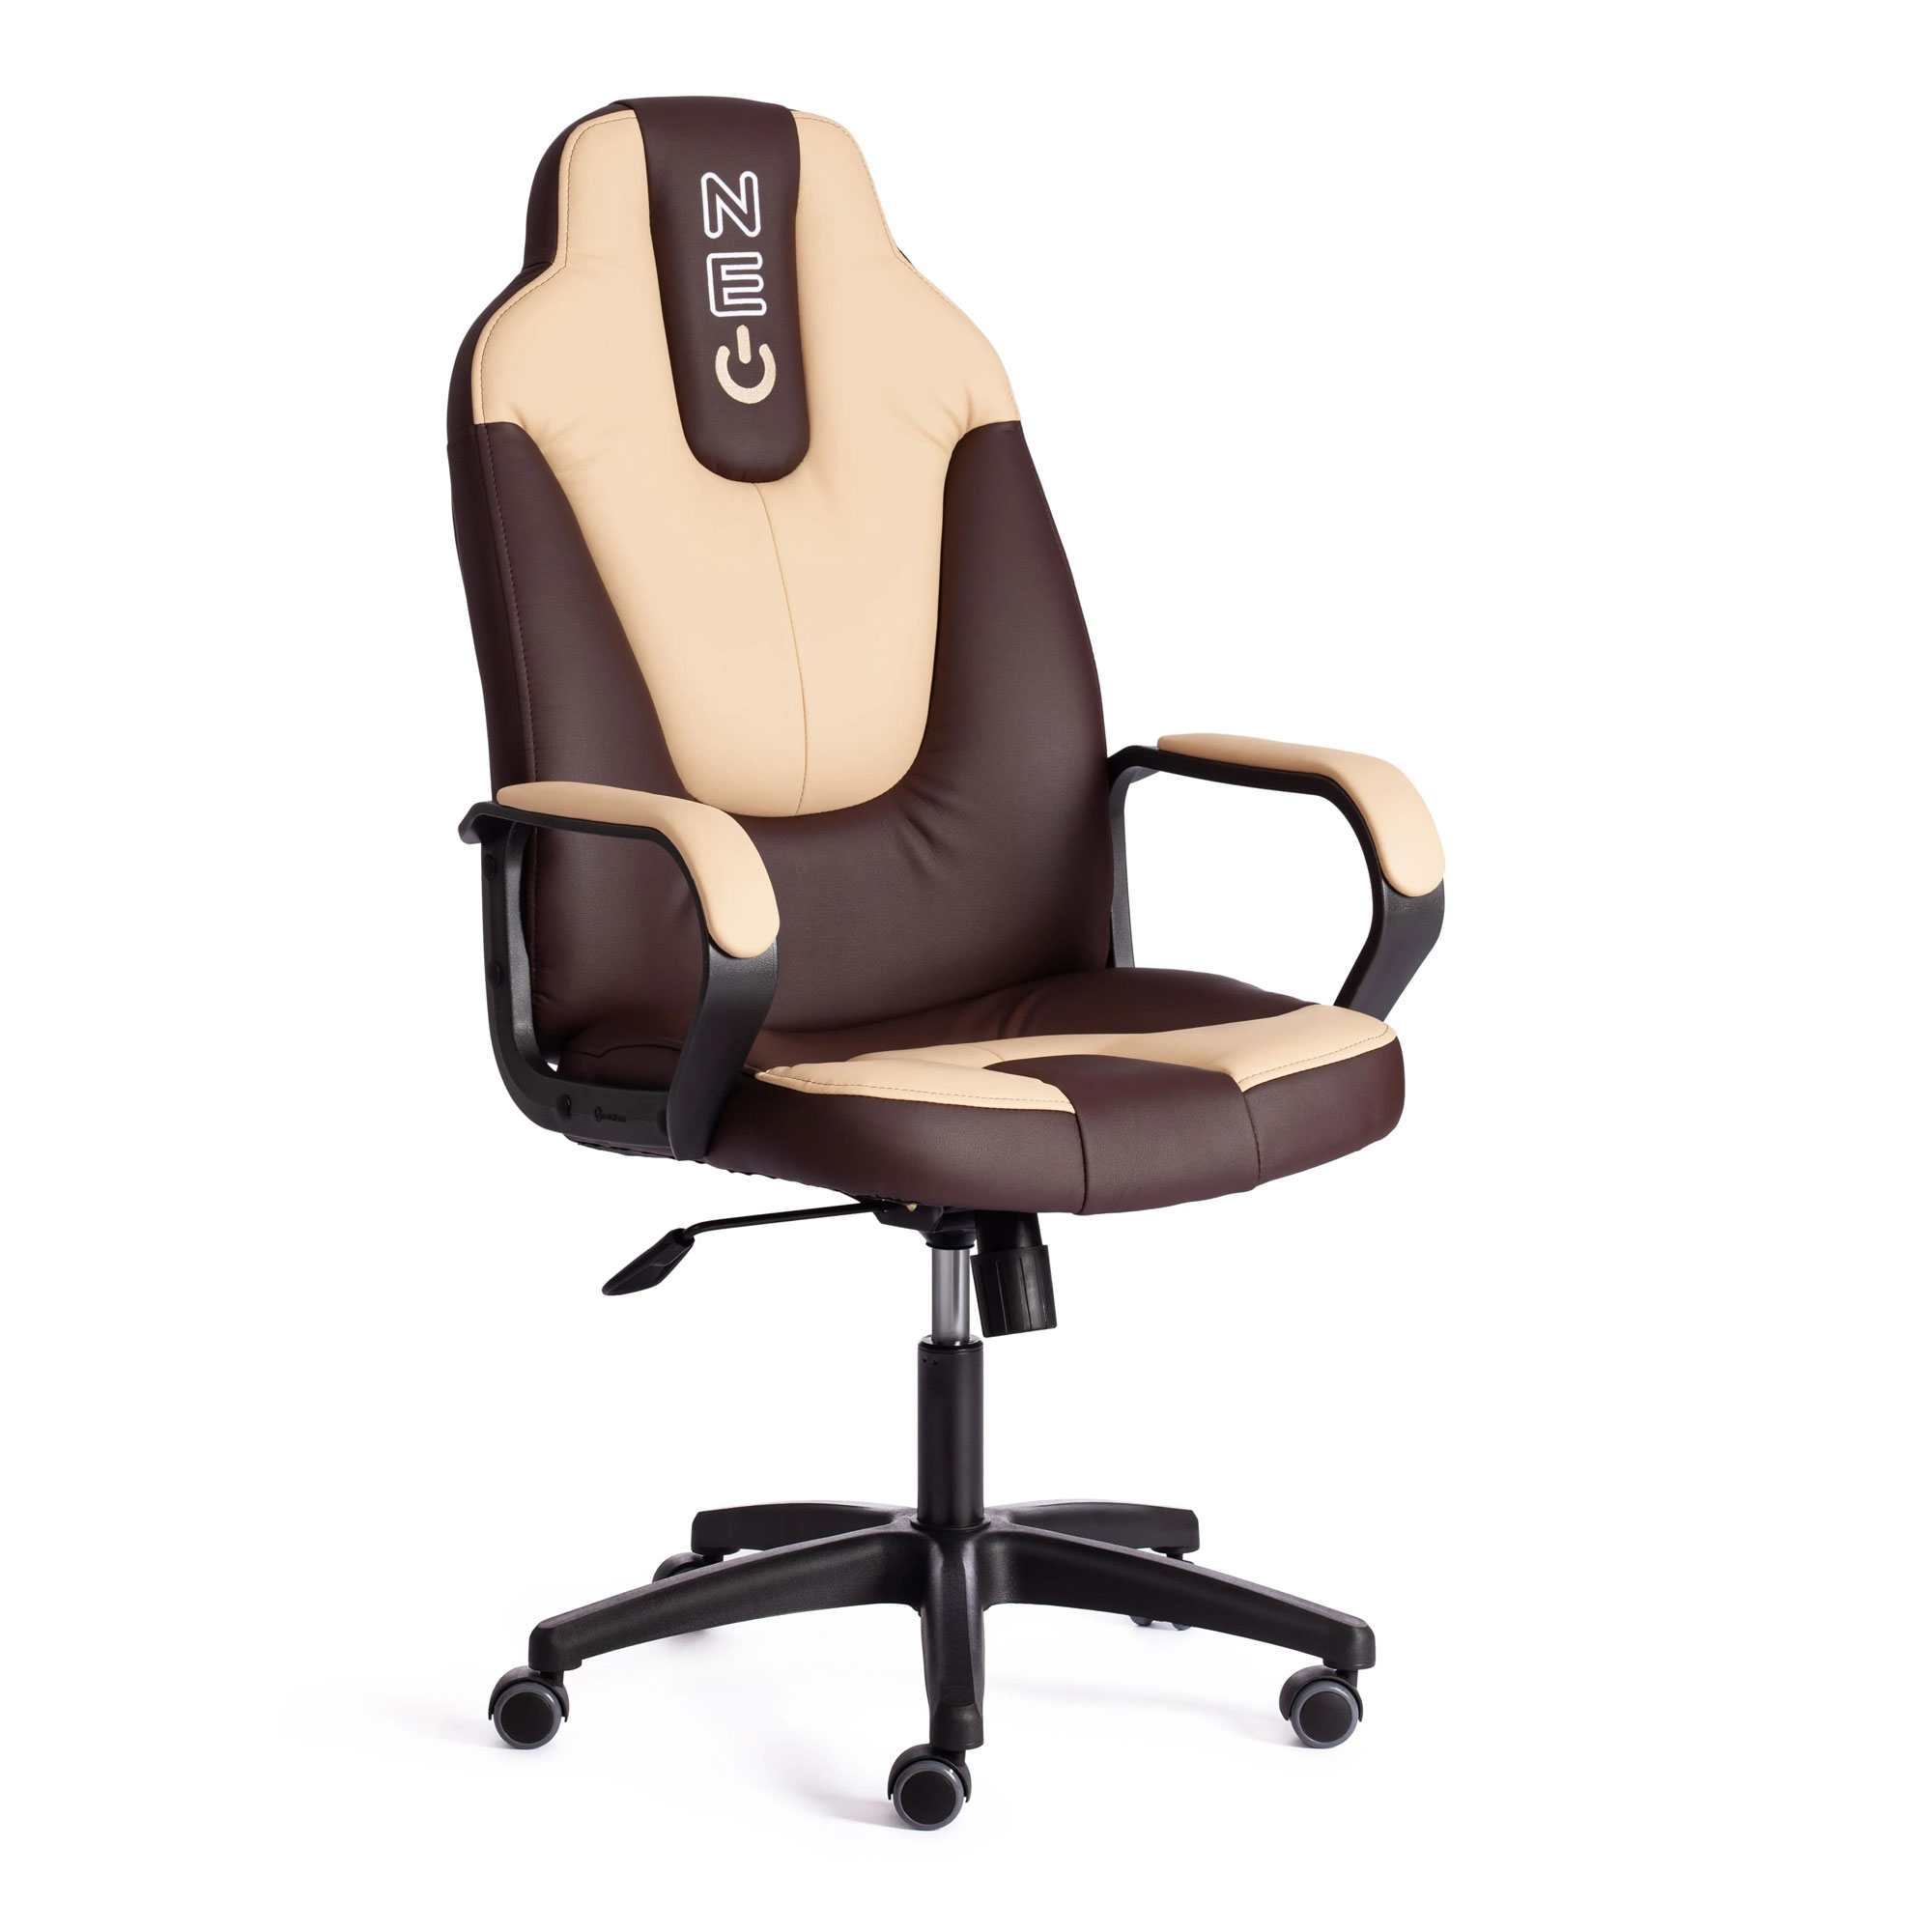 Кресло компьютерное TC Neo искусственная кожа коричневое с бежевым 64х49х122 см кресло компьютерное tc driver искусственная кожа коричневое с бронзовым 55х49х126 см